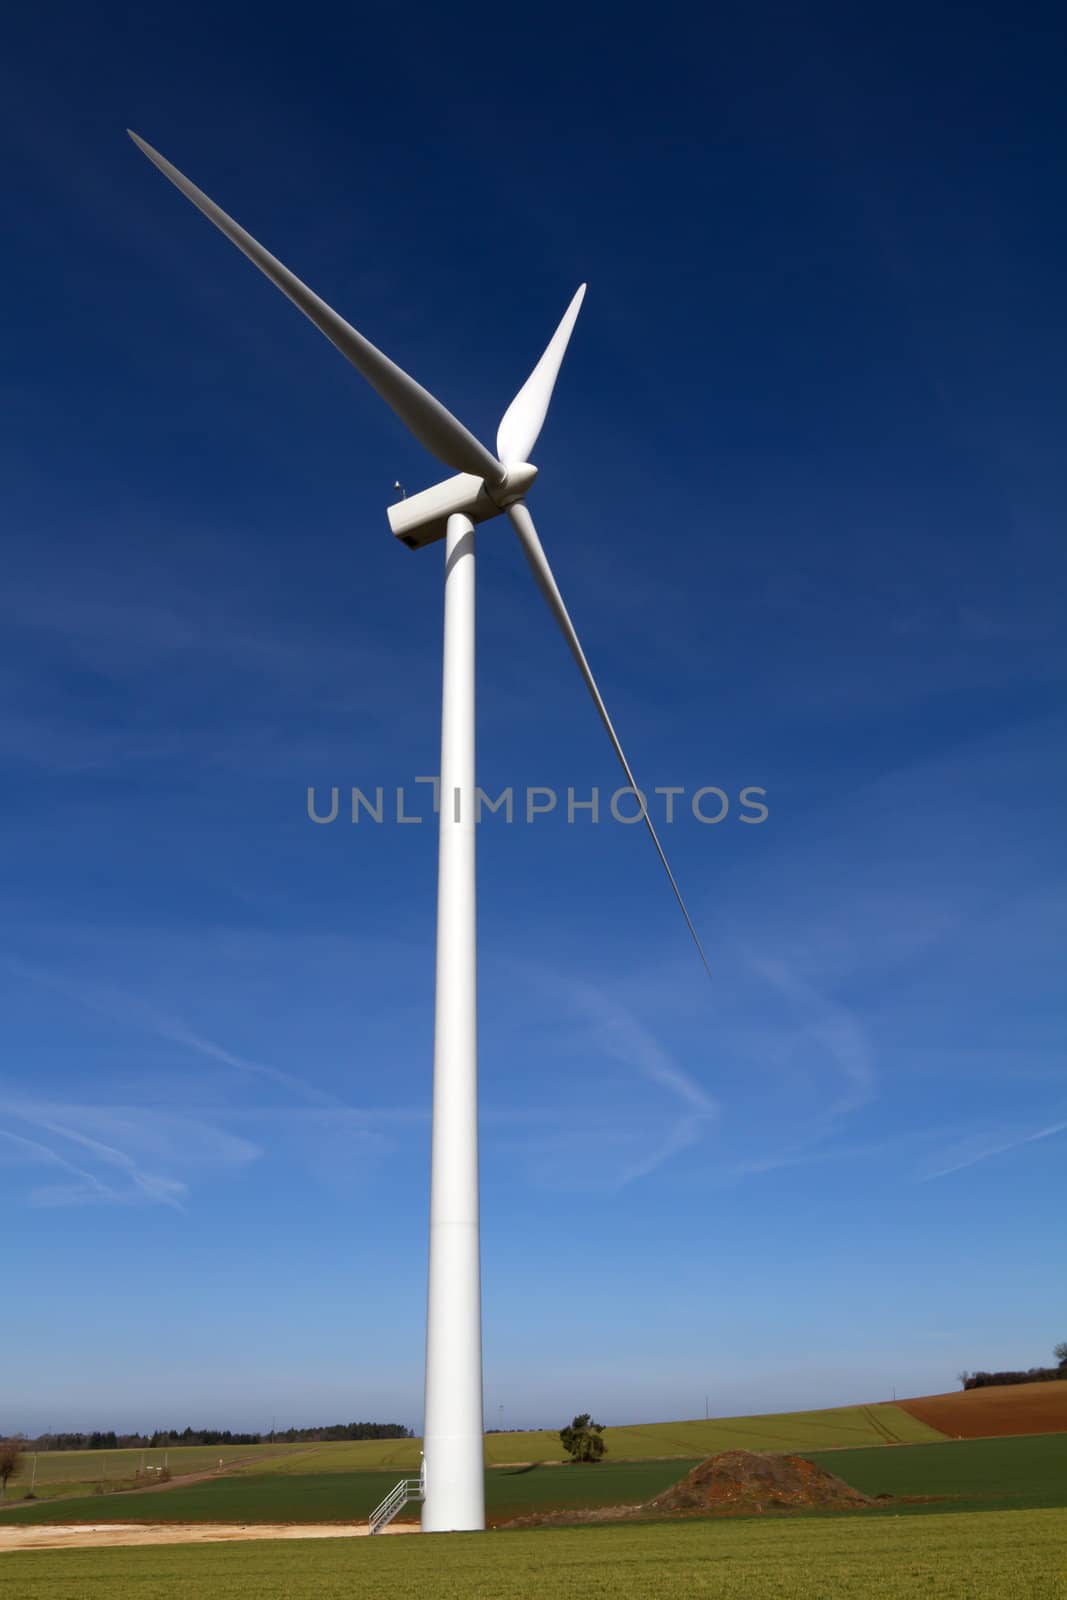 Wind turbine on blue sky by chrisroll